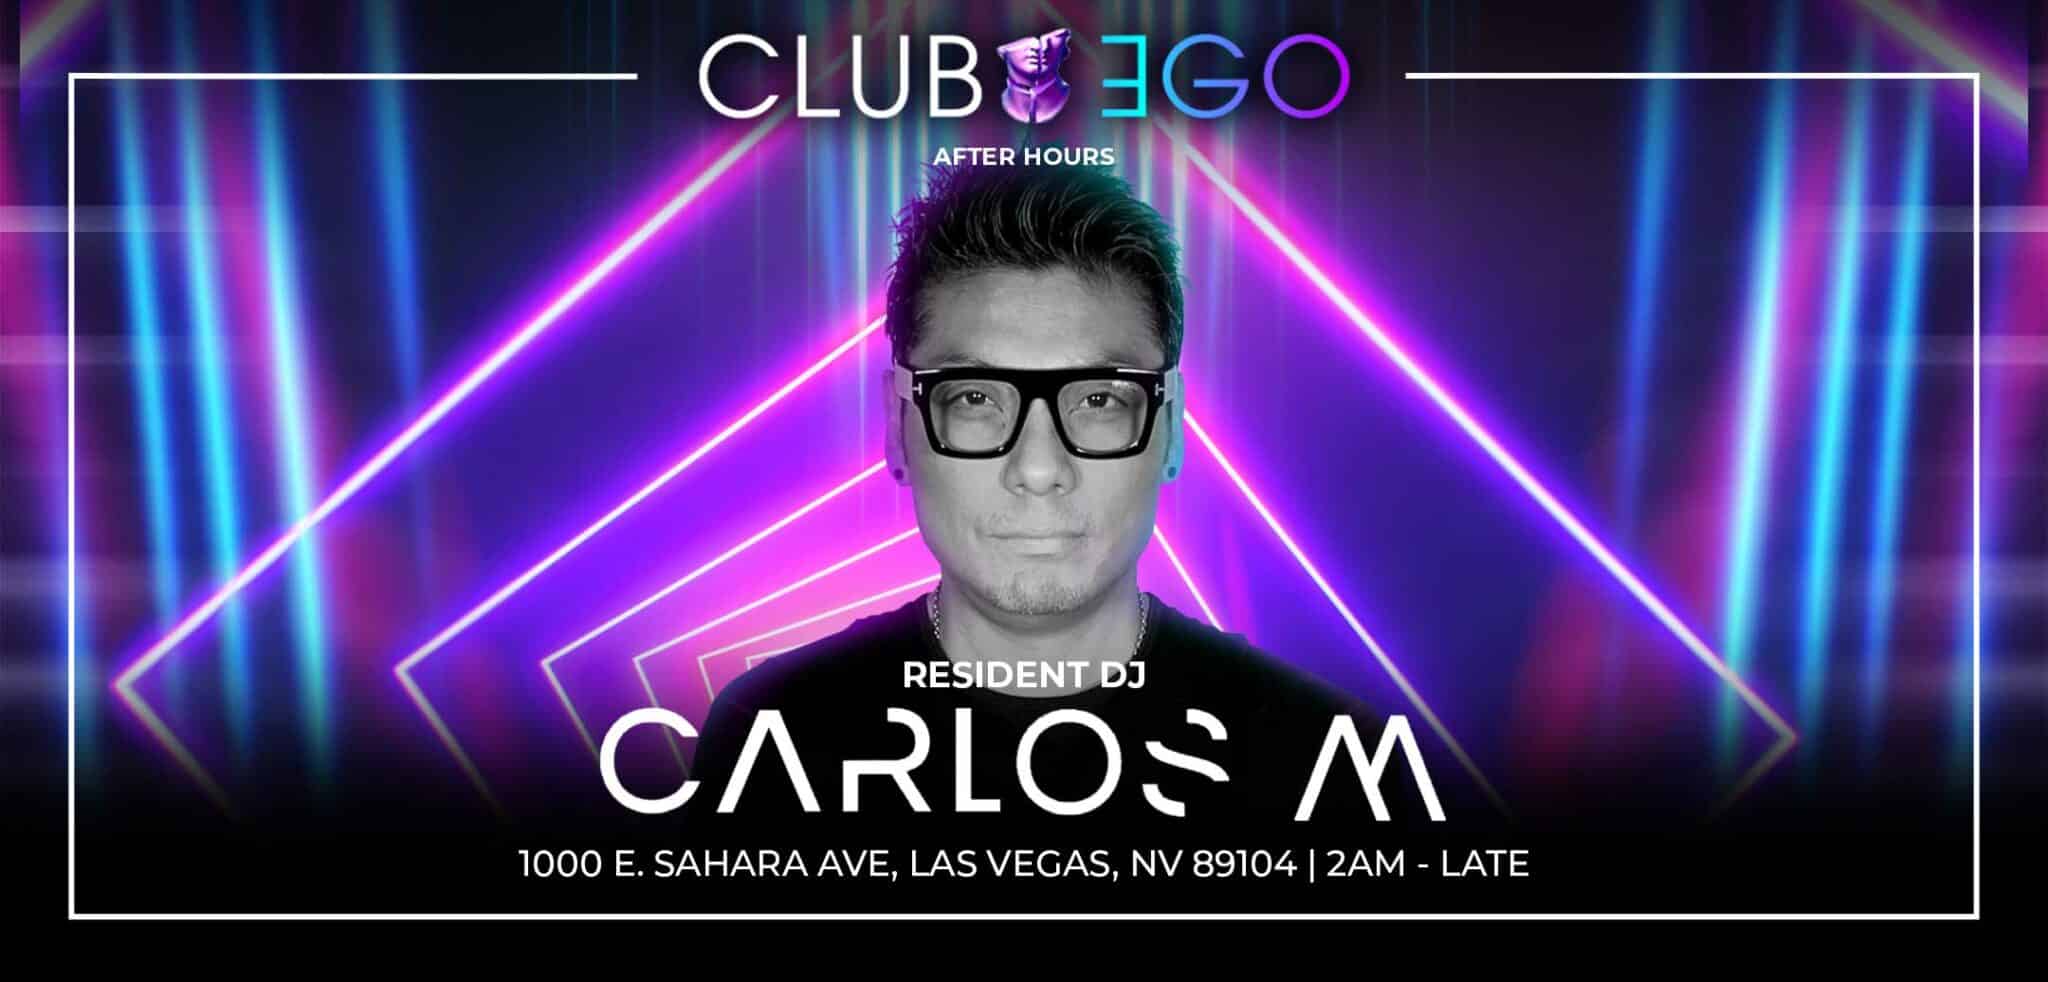 Club Ego Resident DJ, Carlos M